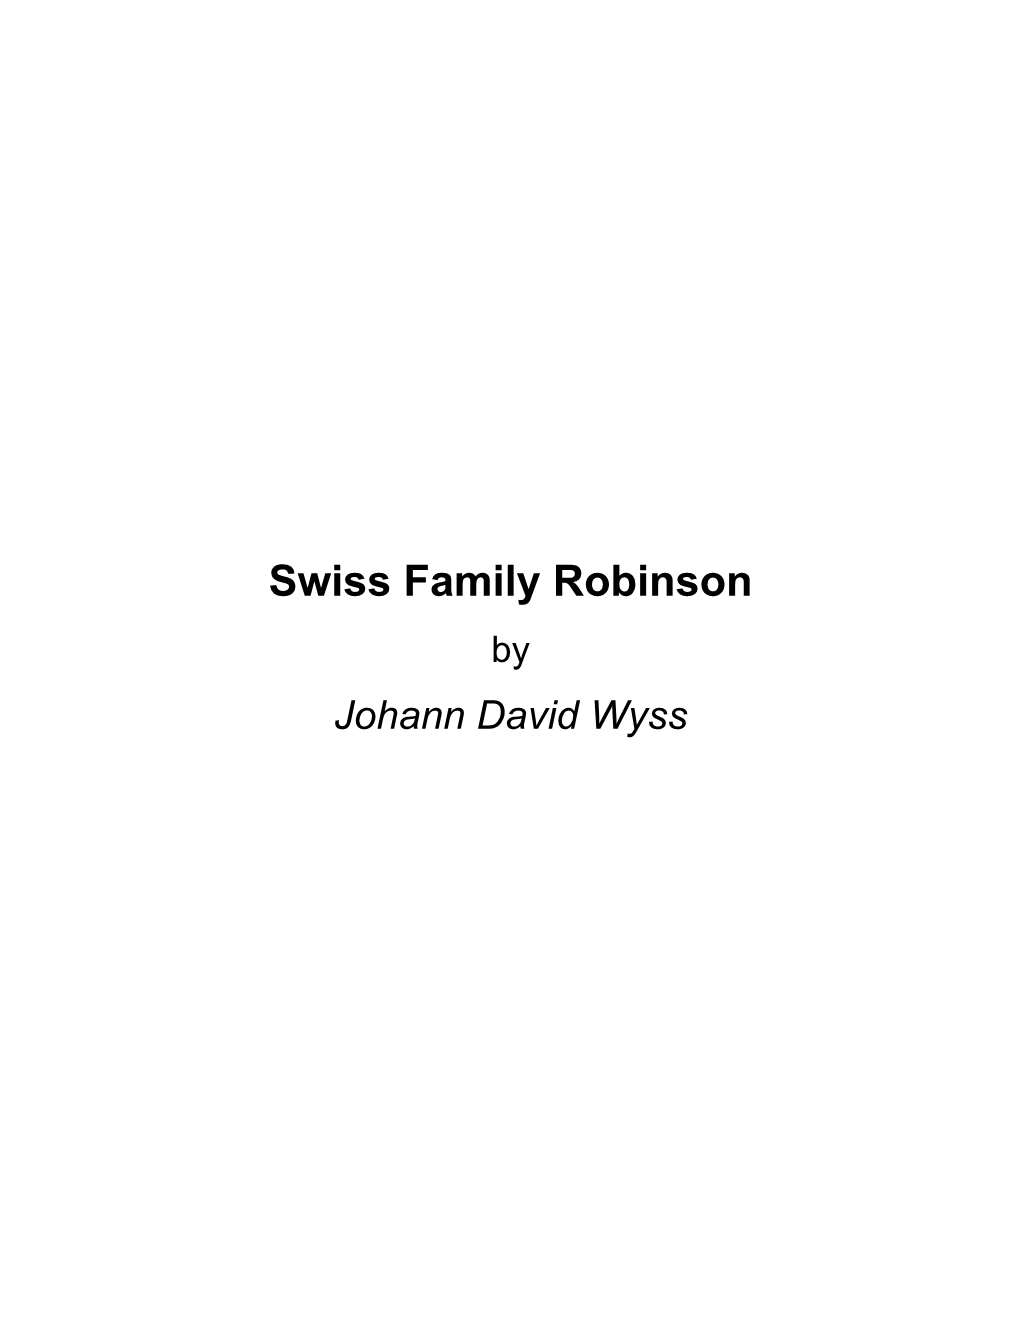 Swiss Family Robinson by Johann David Wyss About Swiss Family Robinson by Johann David Wyss